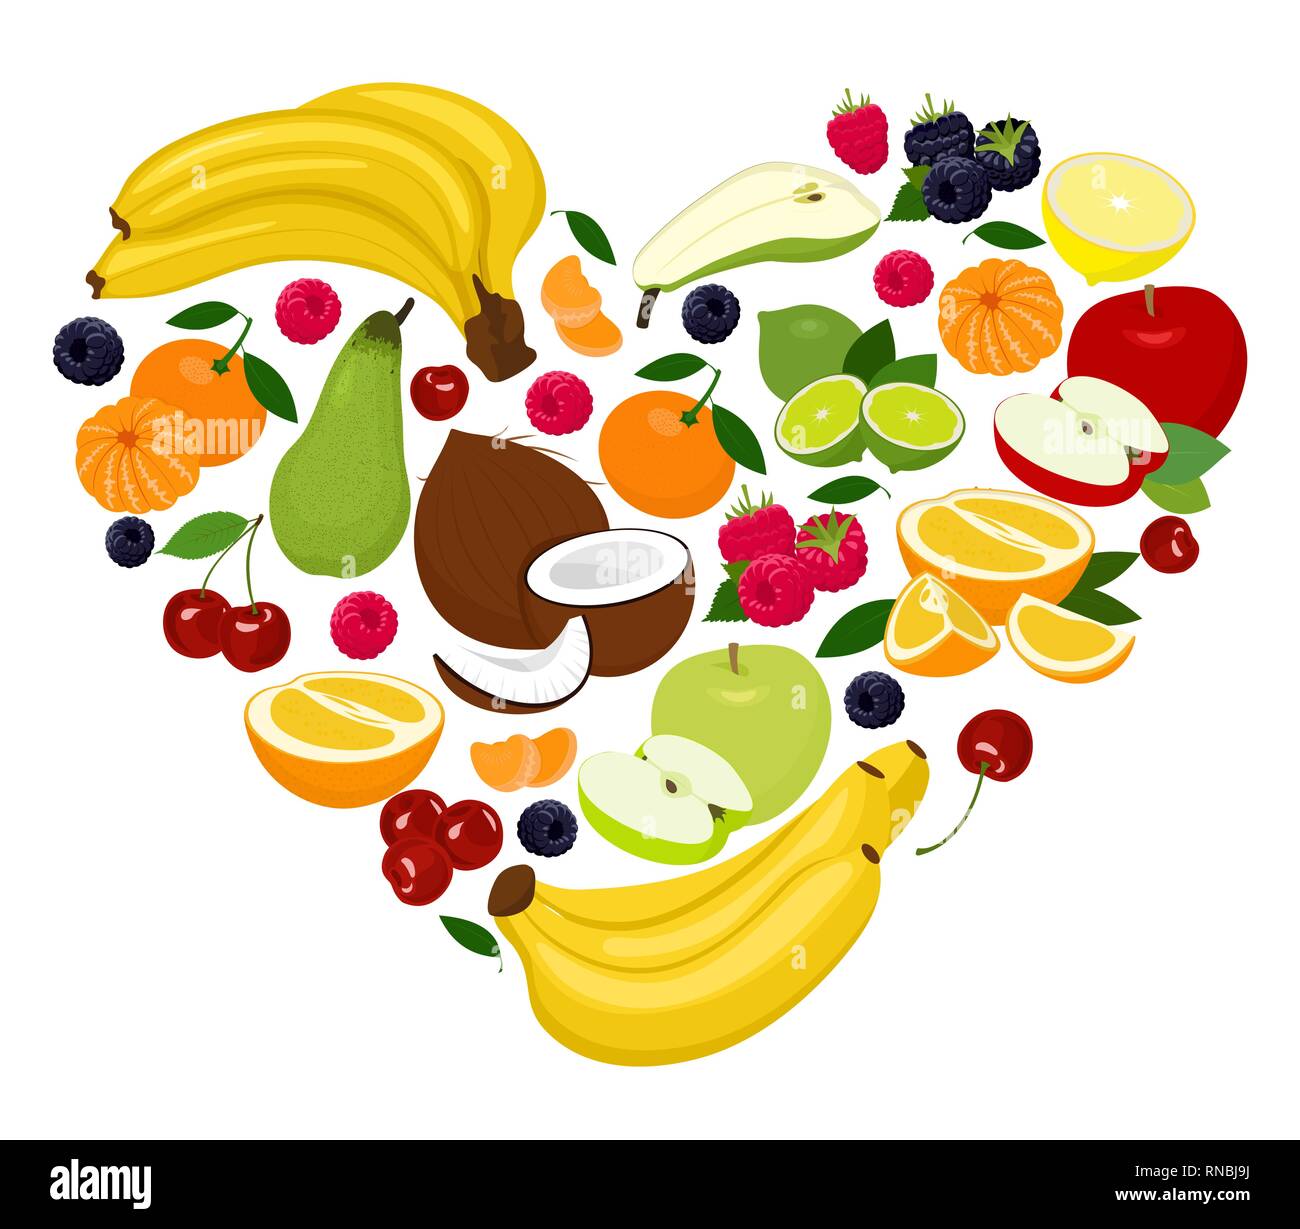 Heart shape by various fruits. Heart of coconut, pear, lime, raspberry, blackberry, apple, cherry, mandarin, banana, orange, grapefruit. Vector Stock Vector